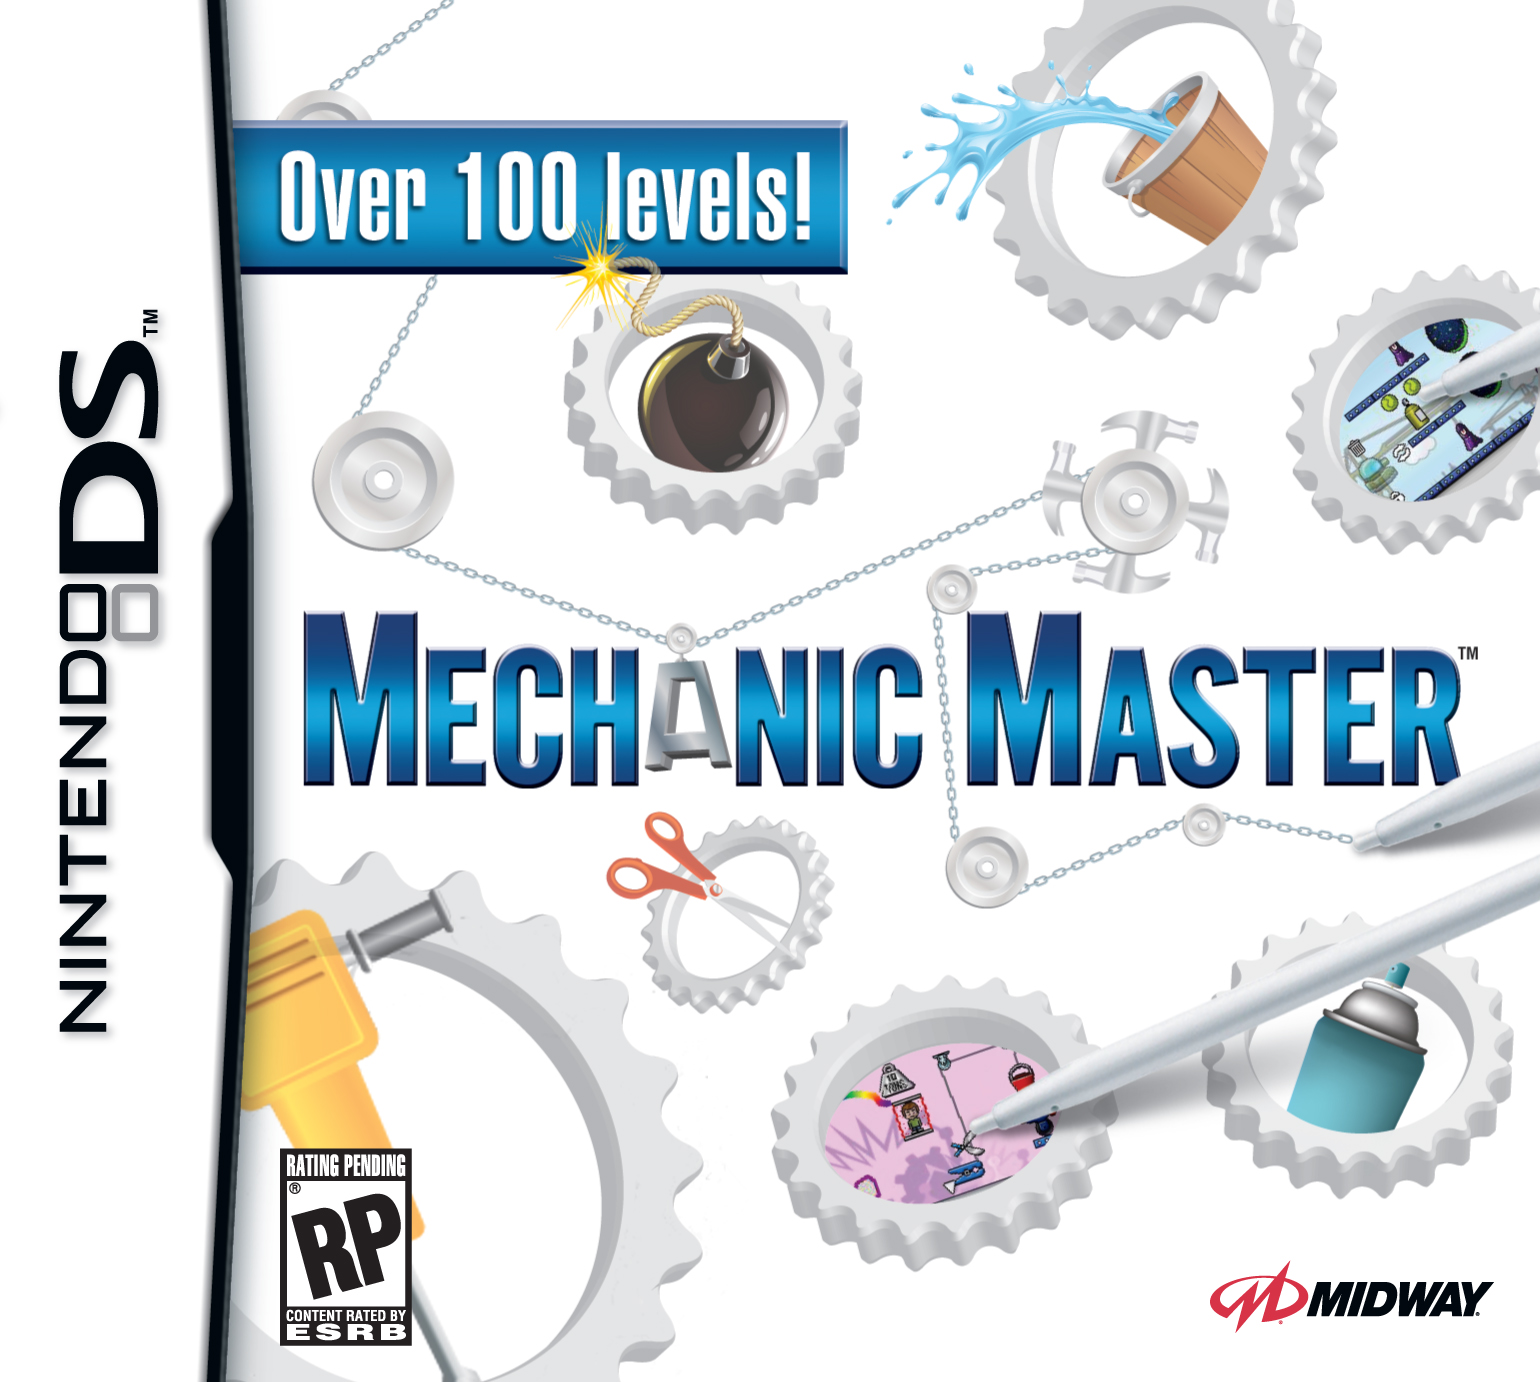 Master everyone. Mechanic Master. Mechanic Master NDS. Mechanic Master c28. Mechanic Master 3ds.